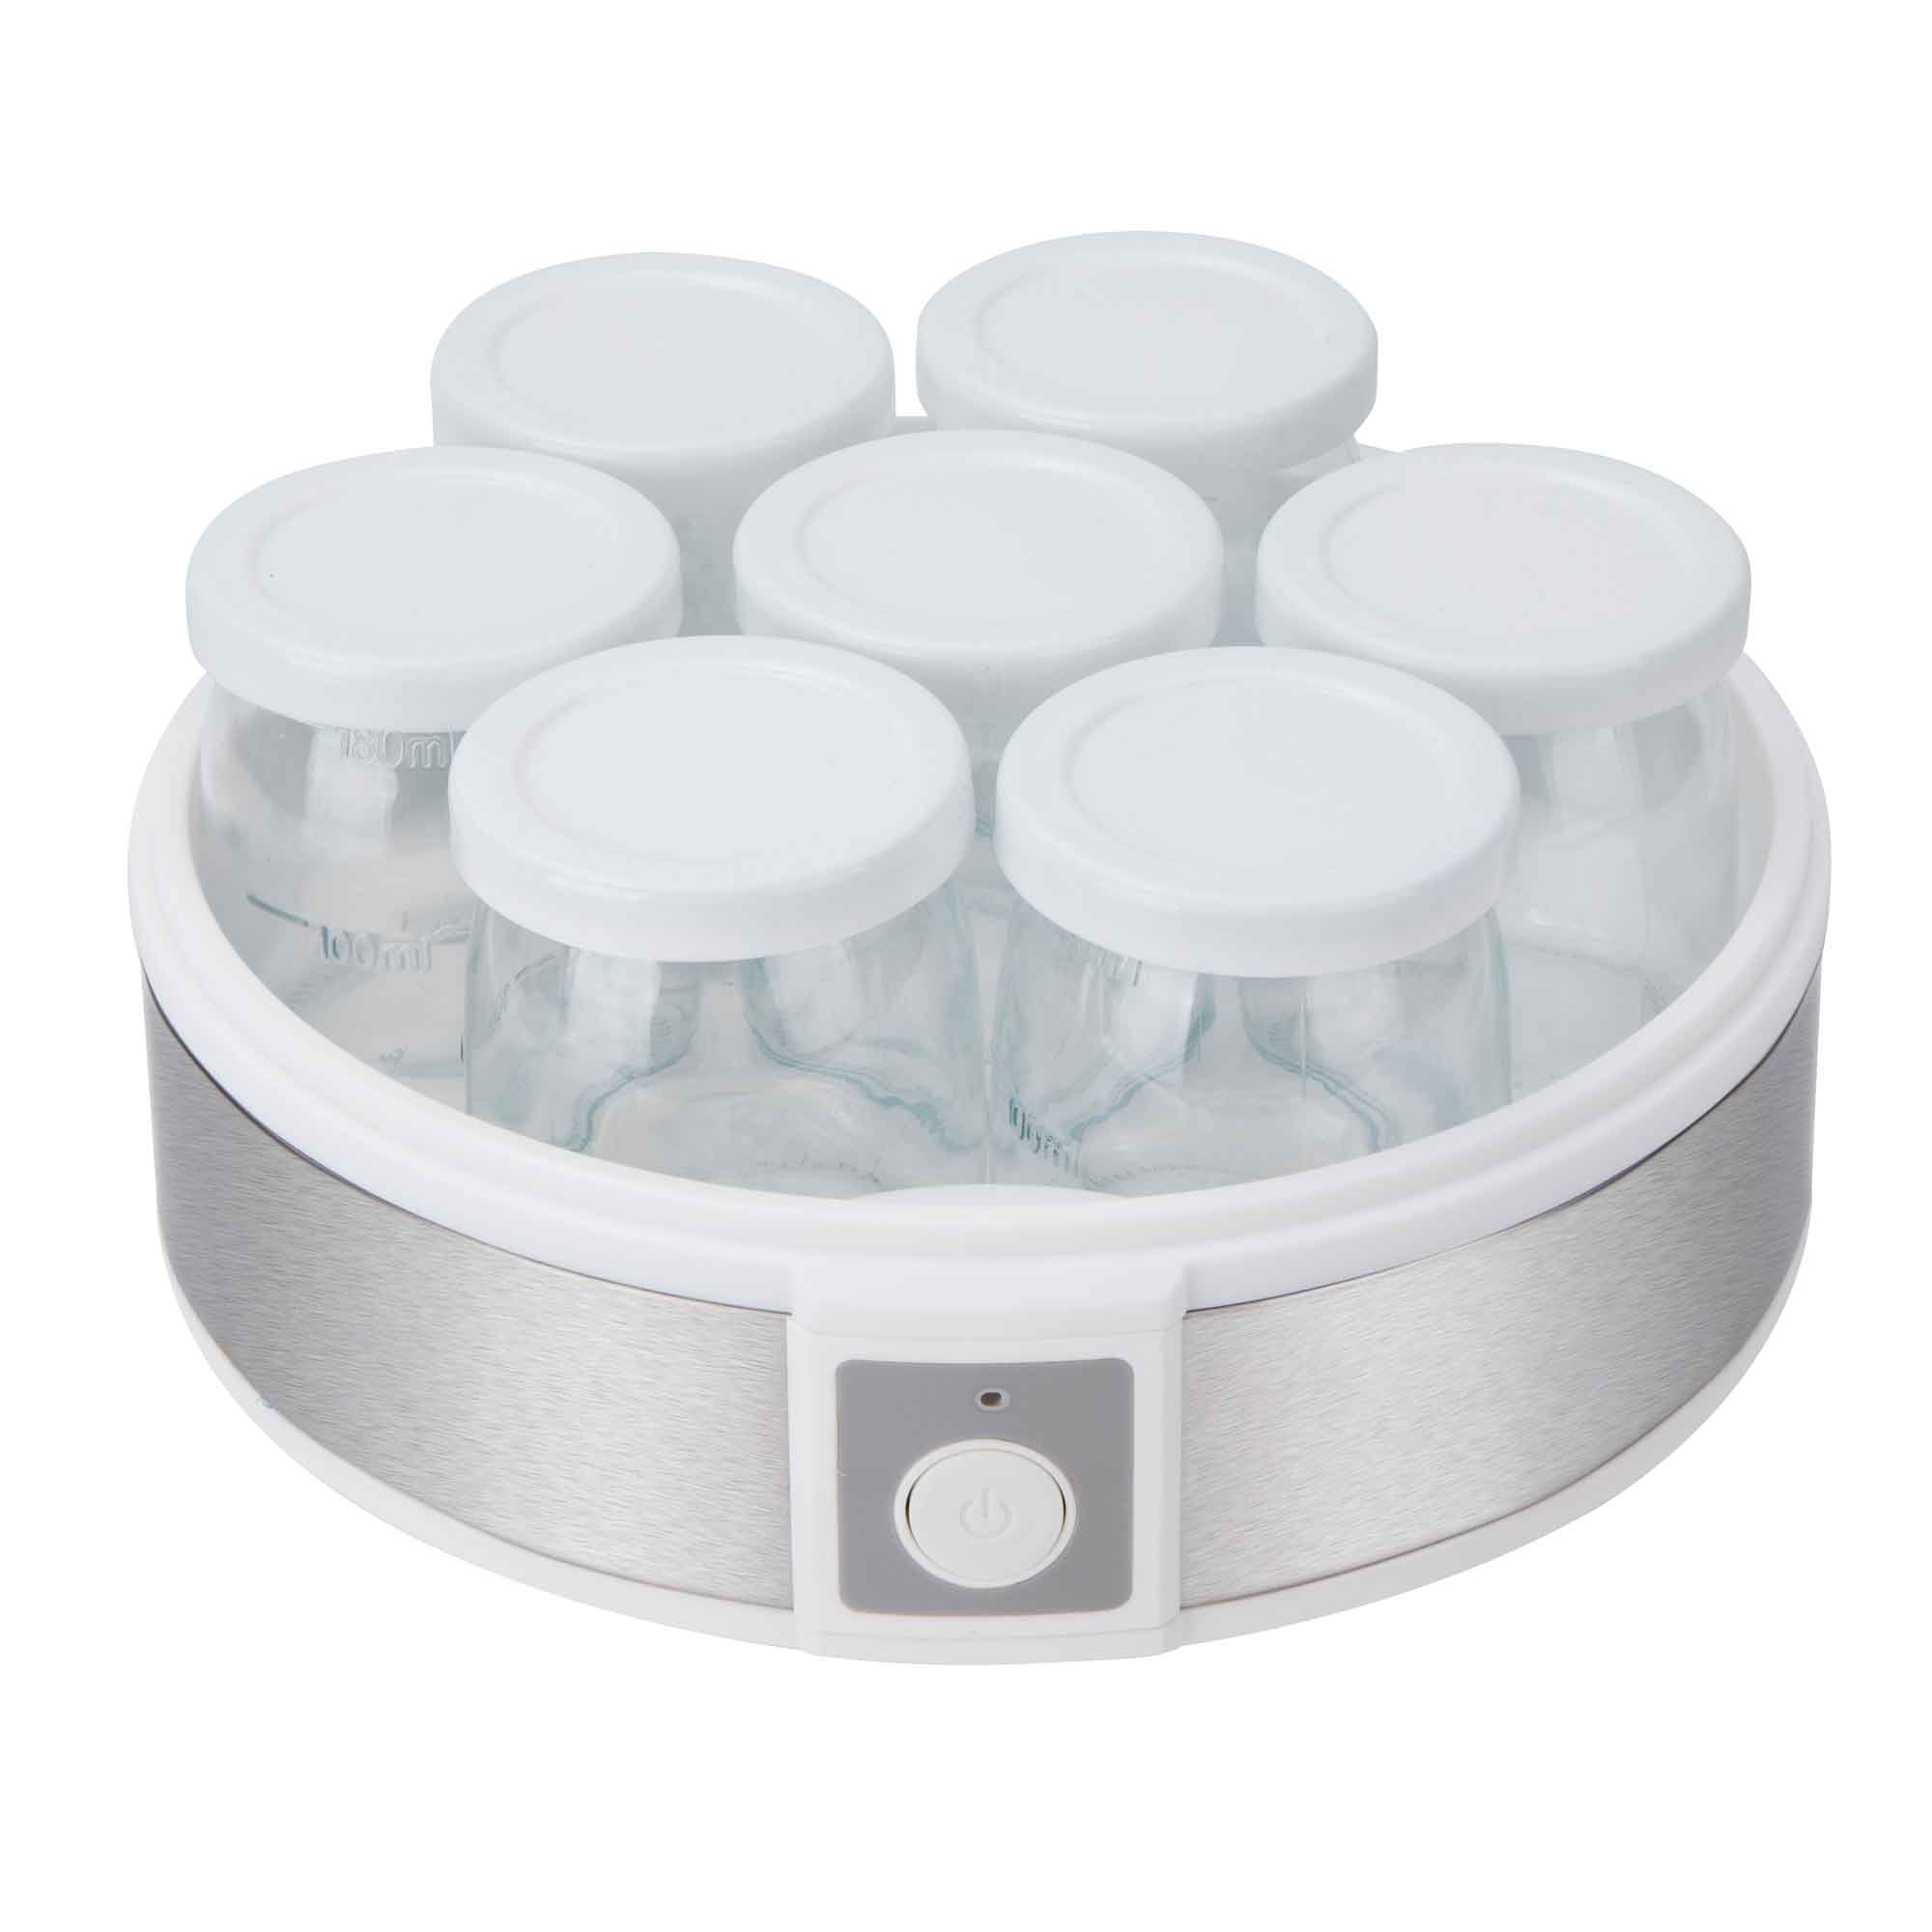 Jata JEYG2266 Yogurtera 20W - 7 Tarros de Cristal 180ml cada uno - Libre de BPA - Patas Antideslizantes - Base de Acero Inoxidable